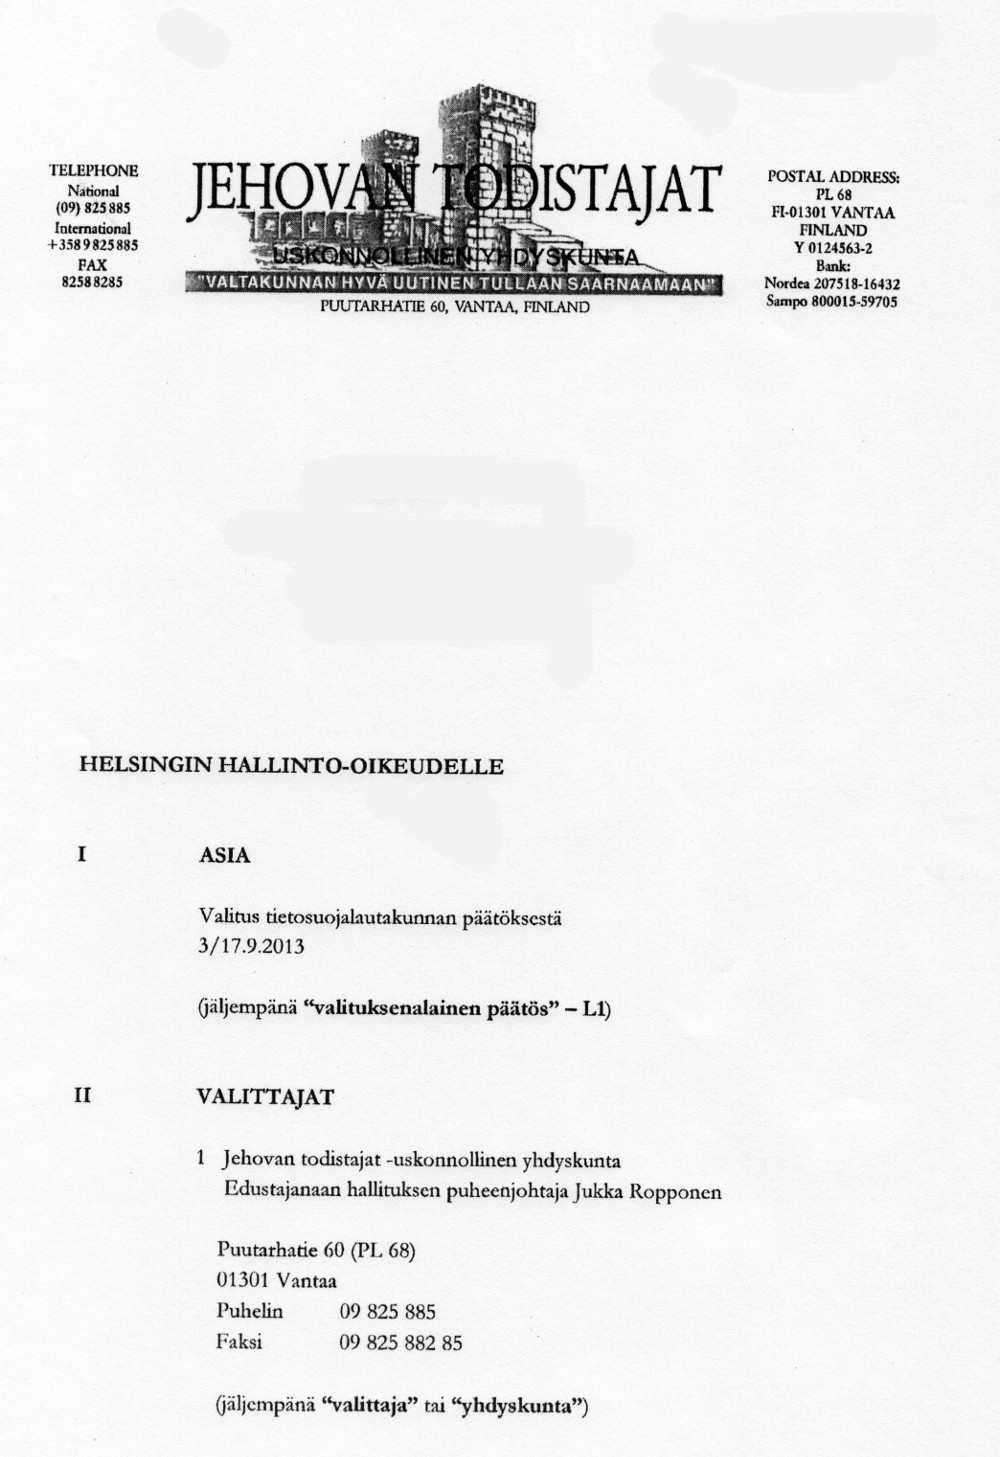 Jehovan todistajat valittivat tietosuojalautakunnan päätöksestä Helsingin hallinto-oikeuteen